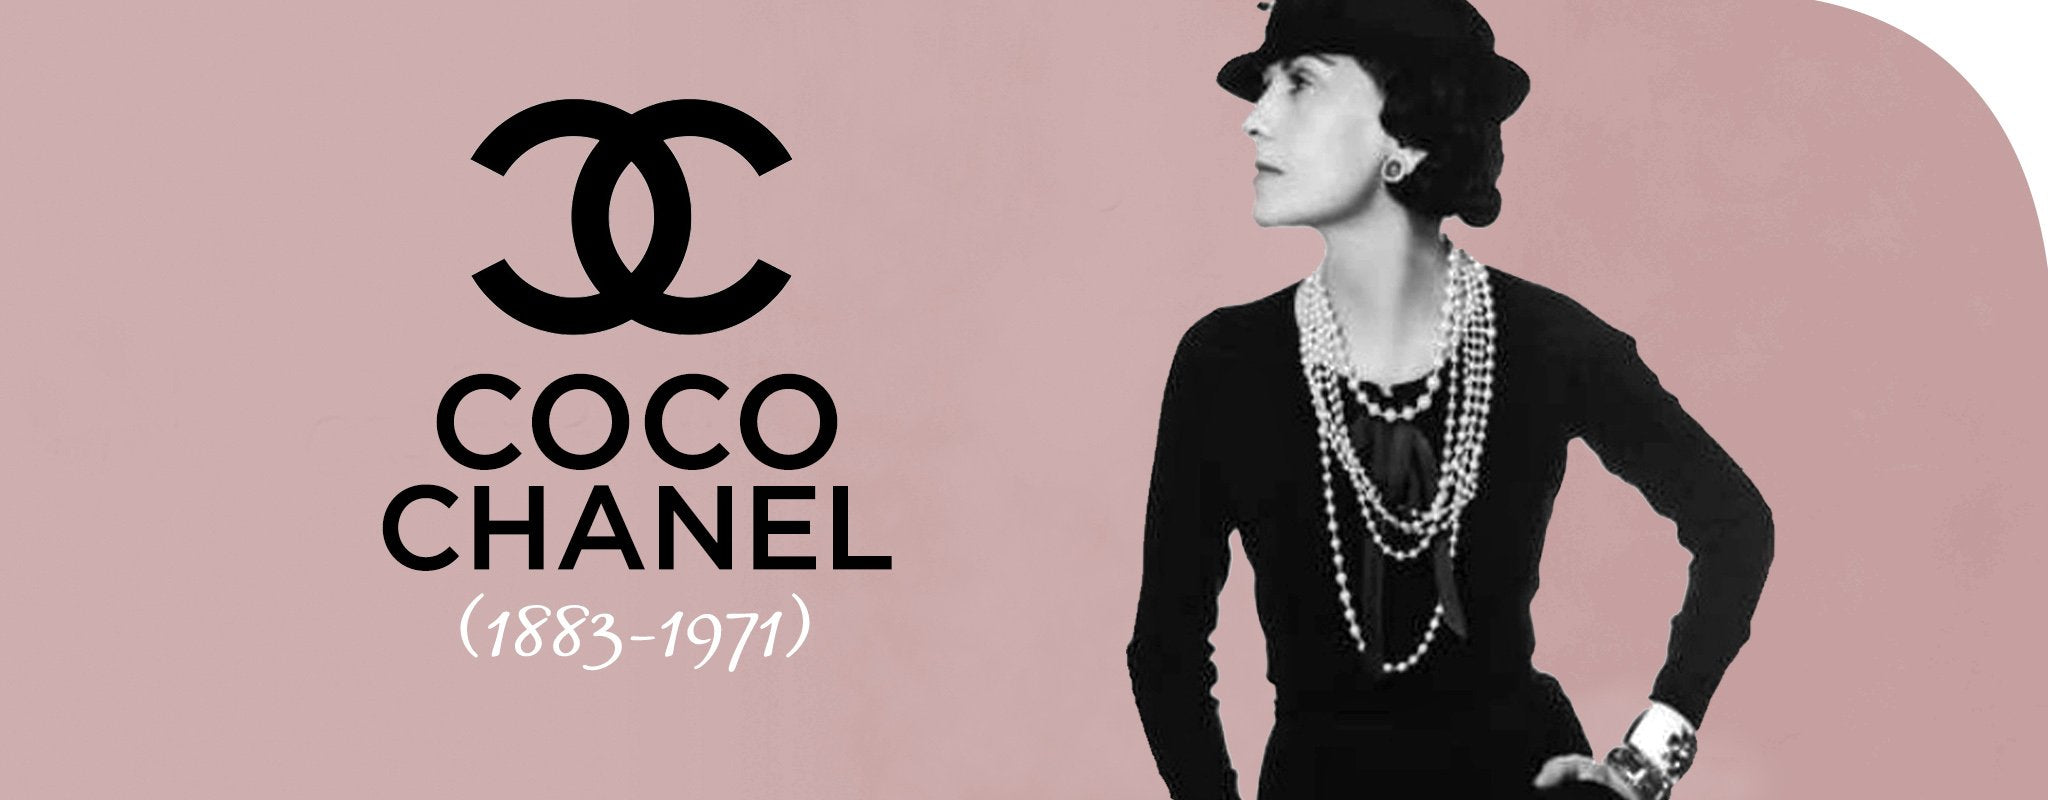 Coco Chanel a história e as criações da estilista  ELLE Brasil